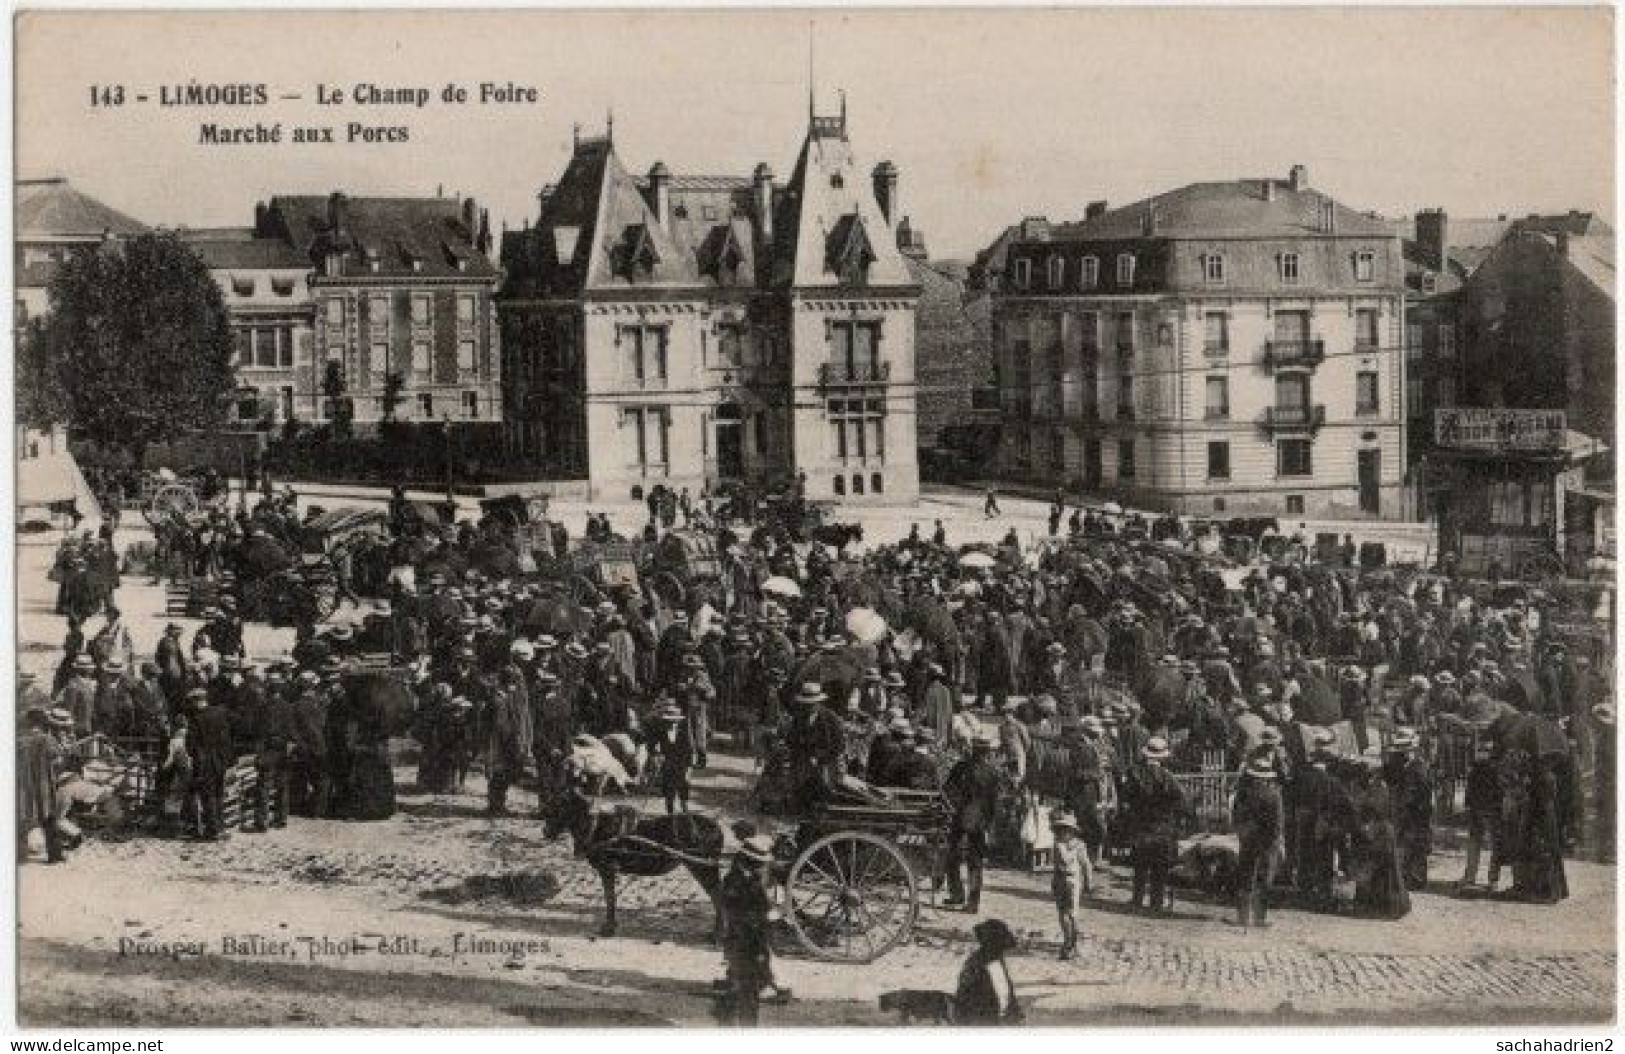 87. LIMOGES. Le Champ De Foire. Marché Aux Porcs. 143 - Limoges